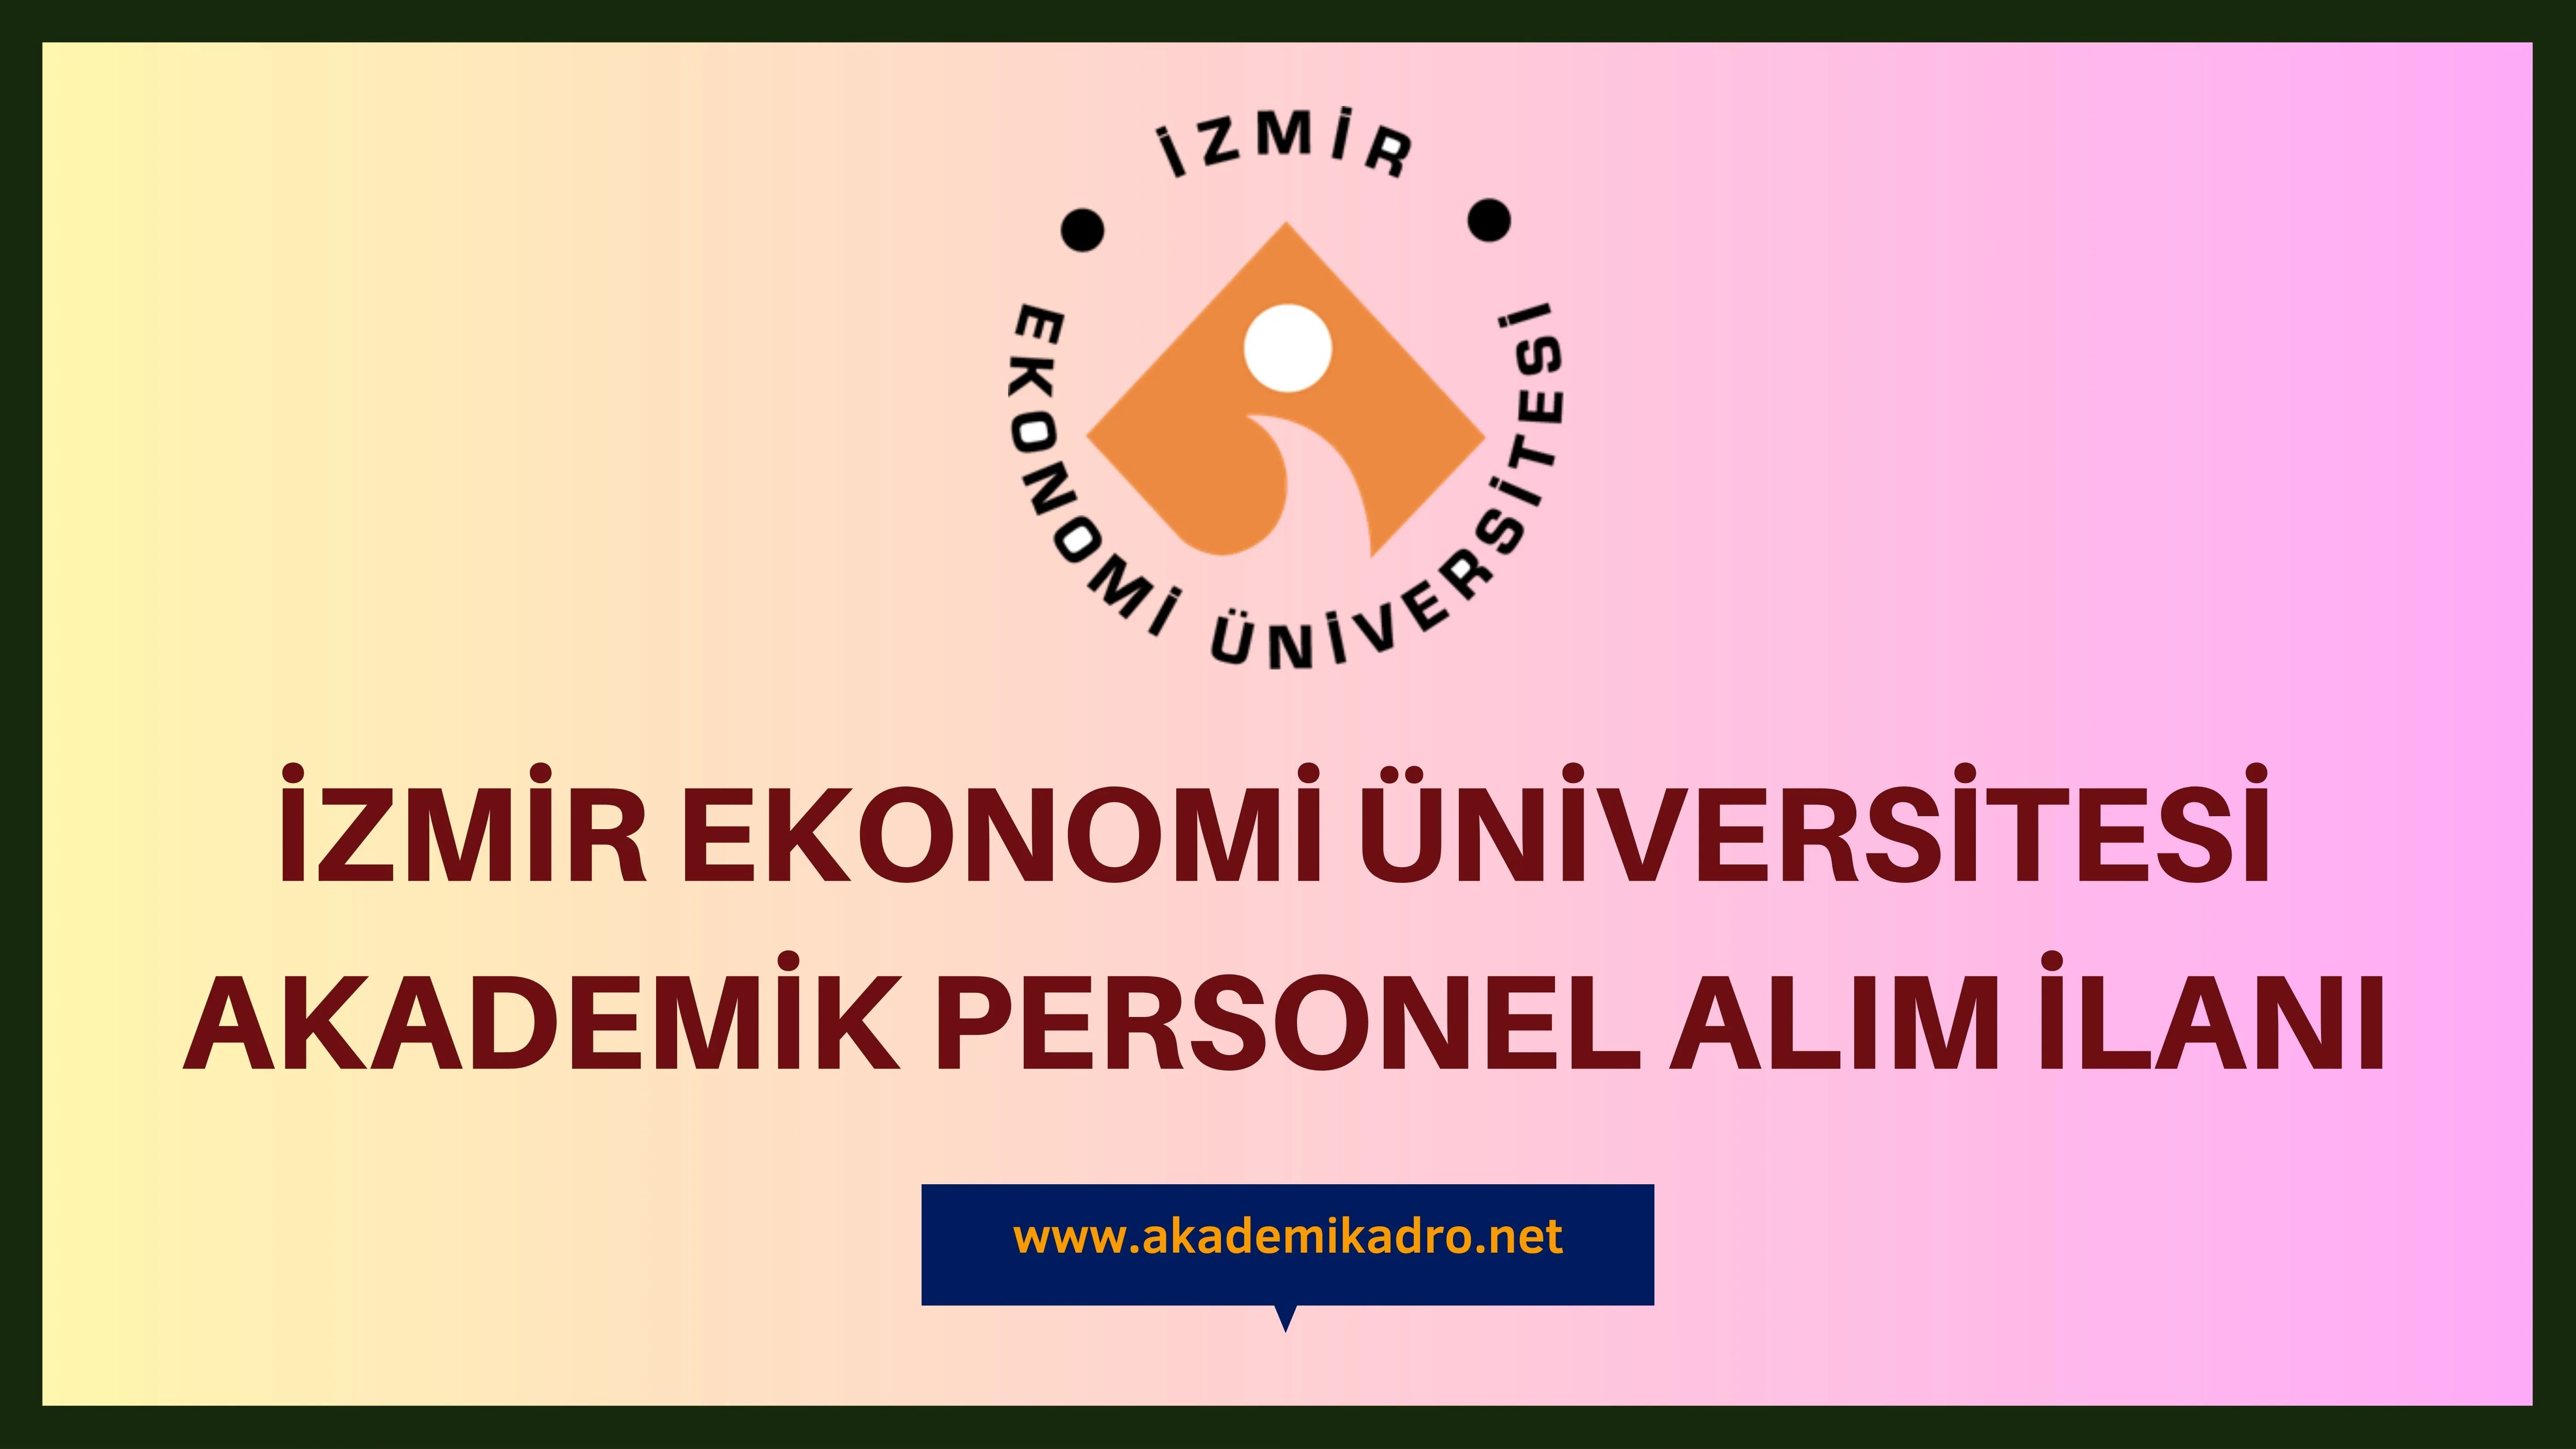 İzmir Ekonomi Üniversitesi birçok alandan 11 akademik personel alacak.